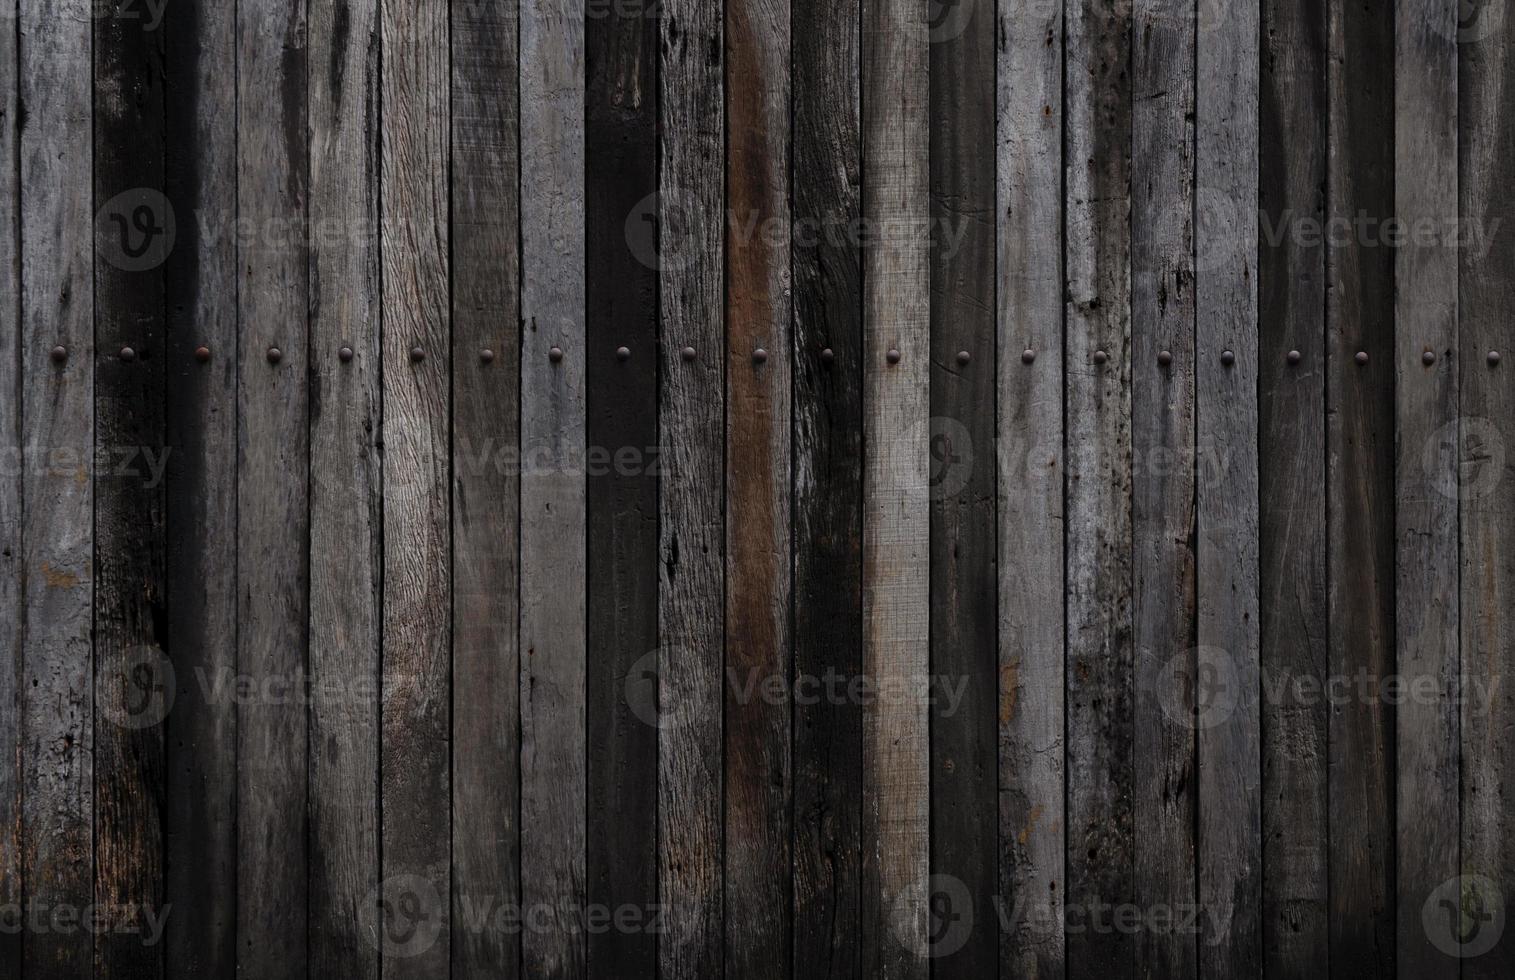 fundo de madeira, fundo de textura de placa de madeira velha marrom, painéis de parede de madeira grunge usados como plano de fundo ou papel de parede foto